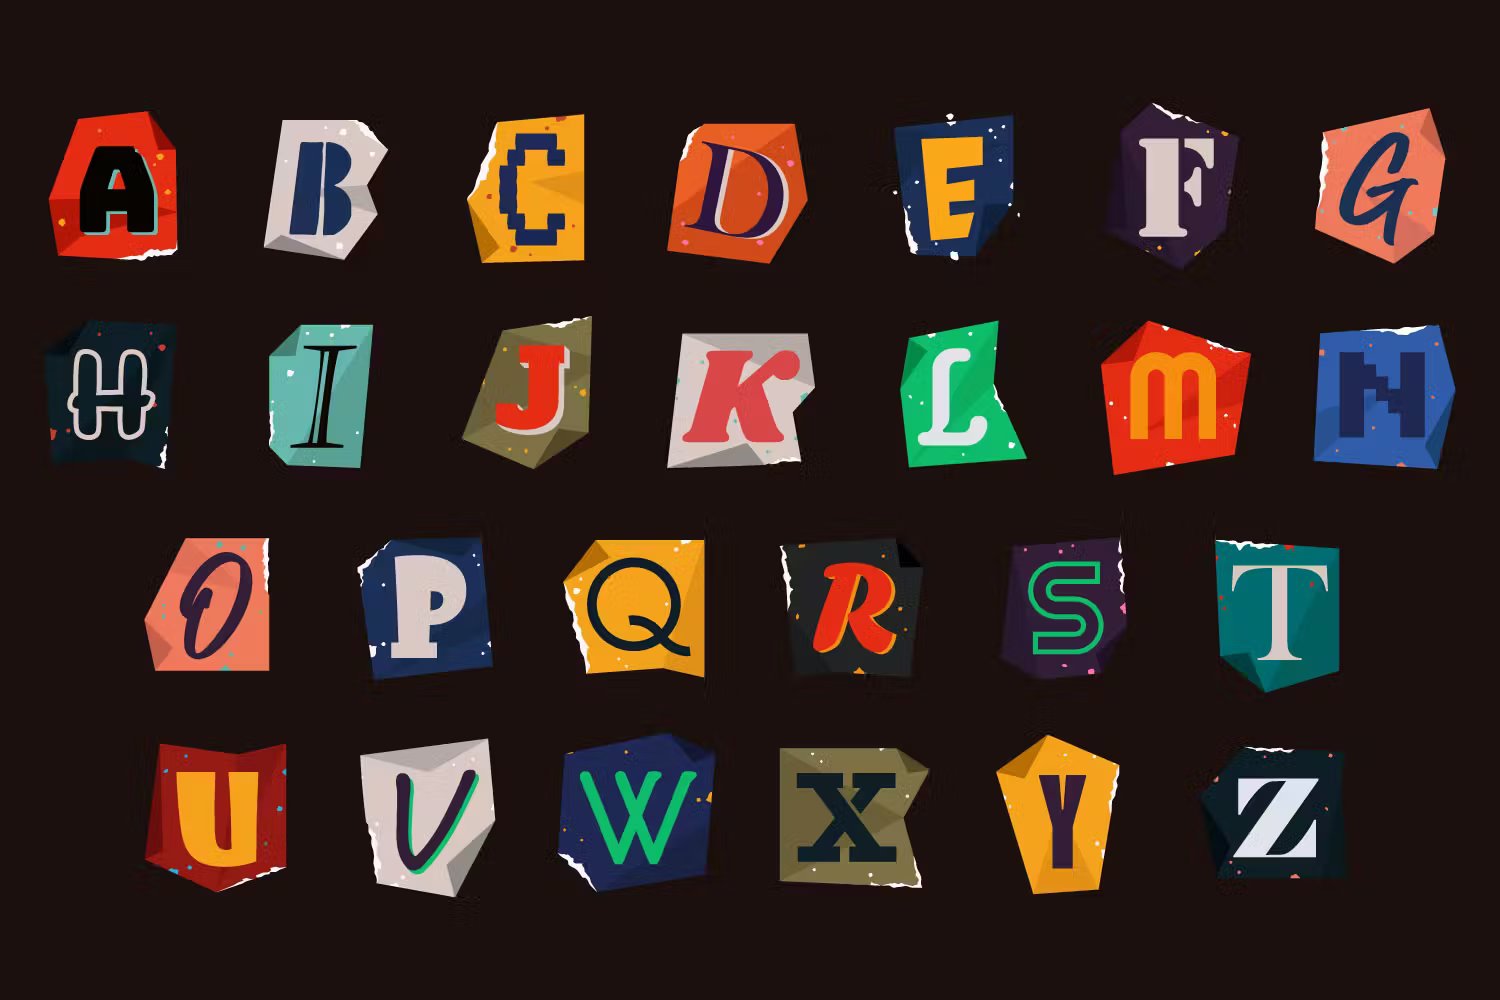 字母和数字/符号艺术拼贴海报杂志社交媒体设计元素PNG/AI Letter Cutout Magazine Texture Ransom 图片素材 第2张